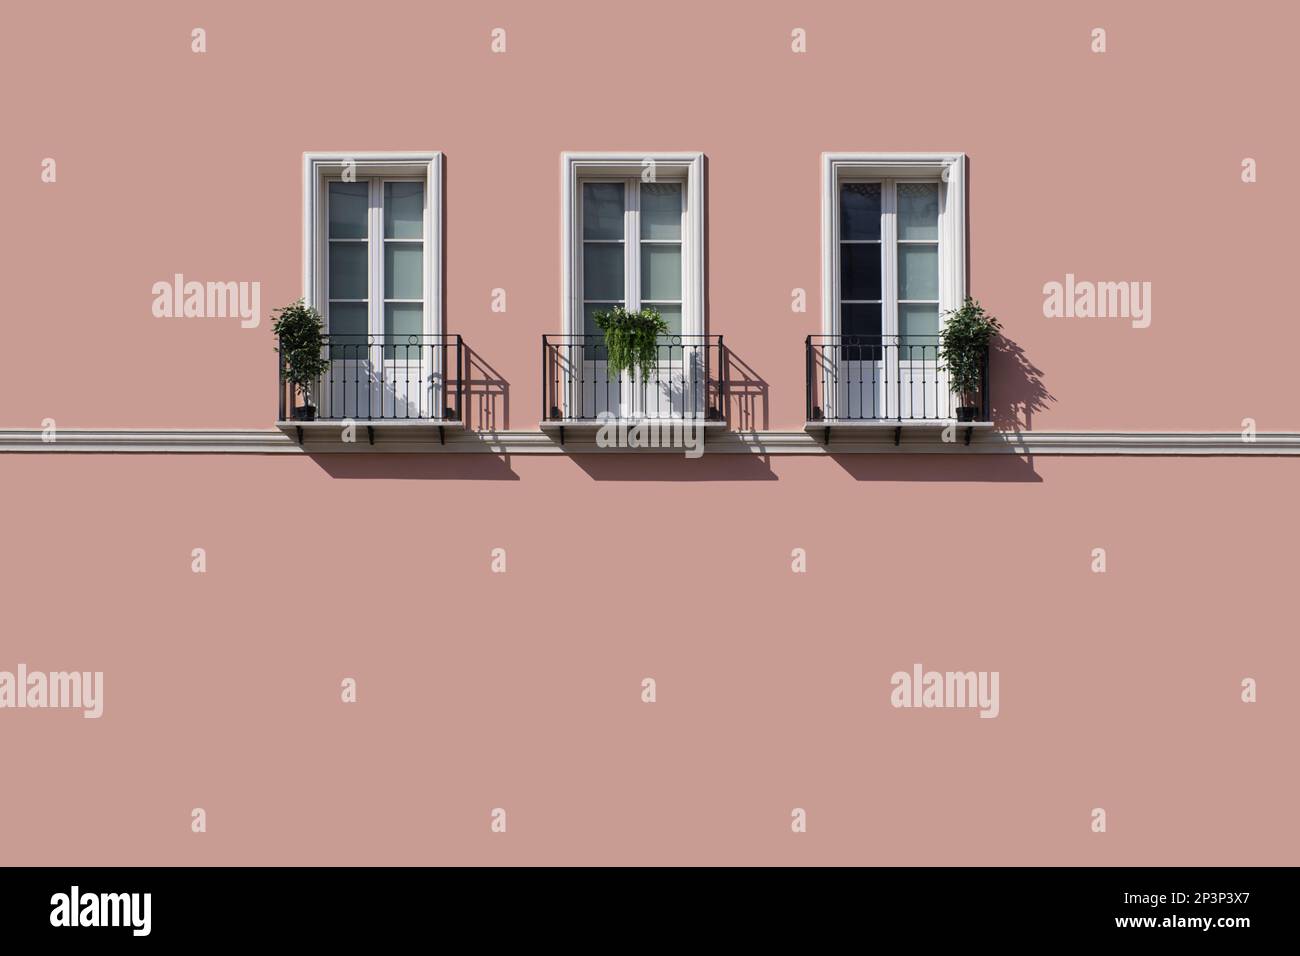 Trois fenêtres avec balcon sur un grand mur rose vide Banque D'Images